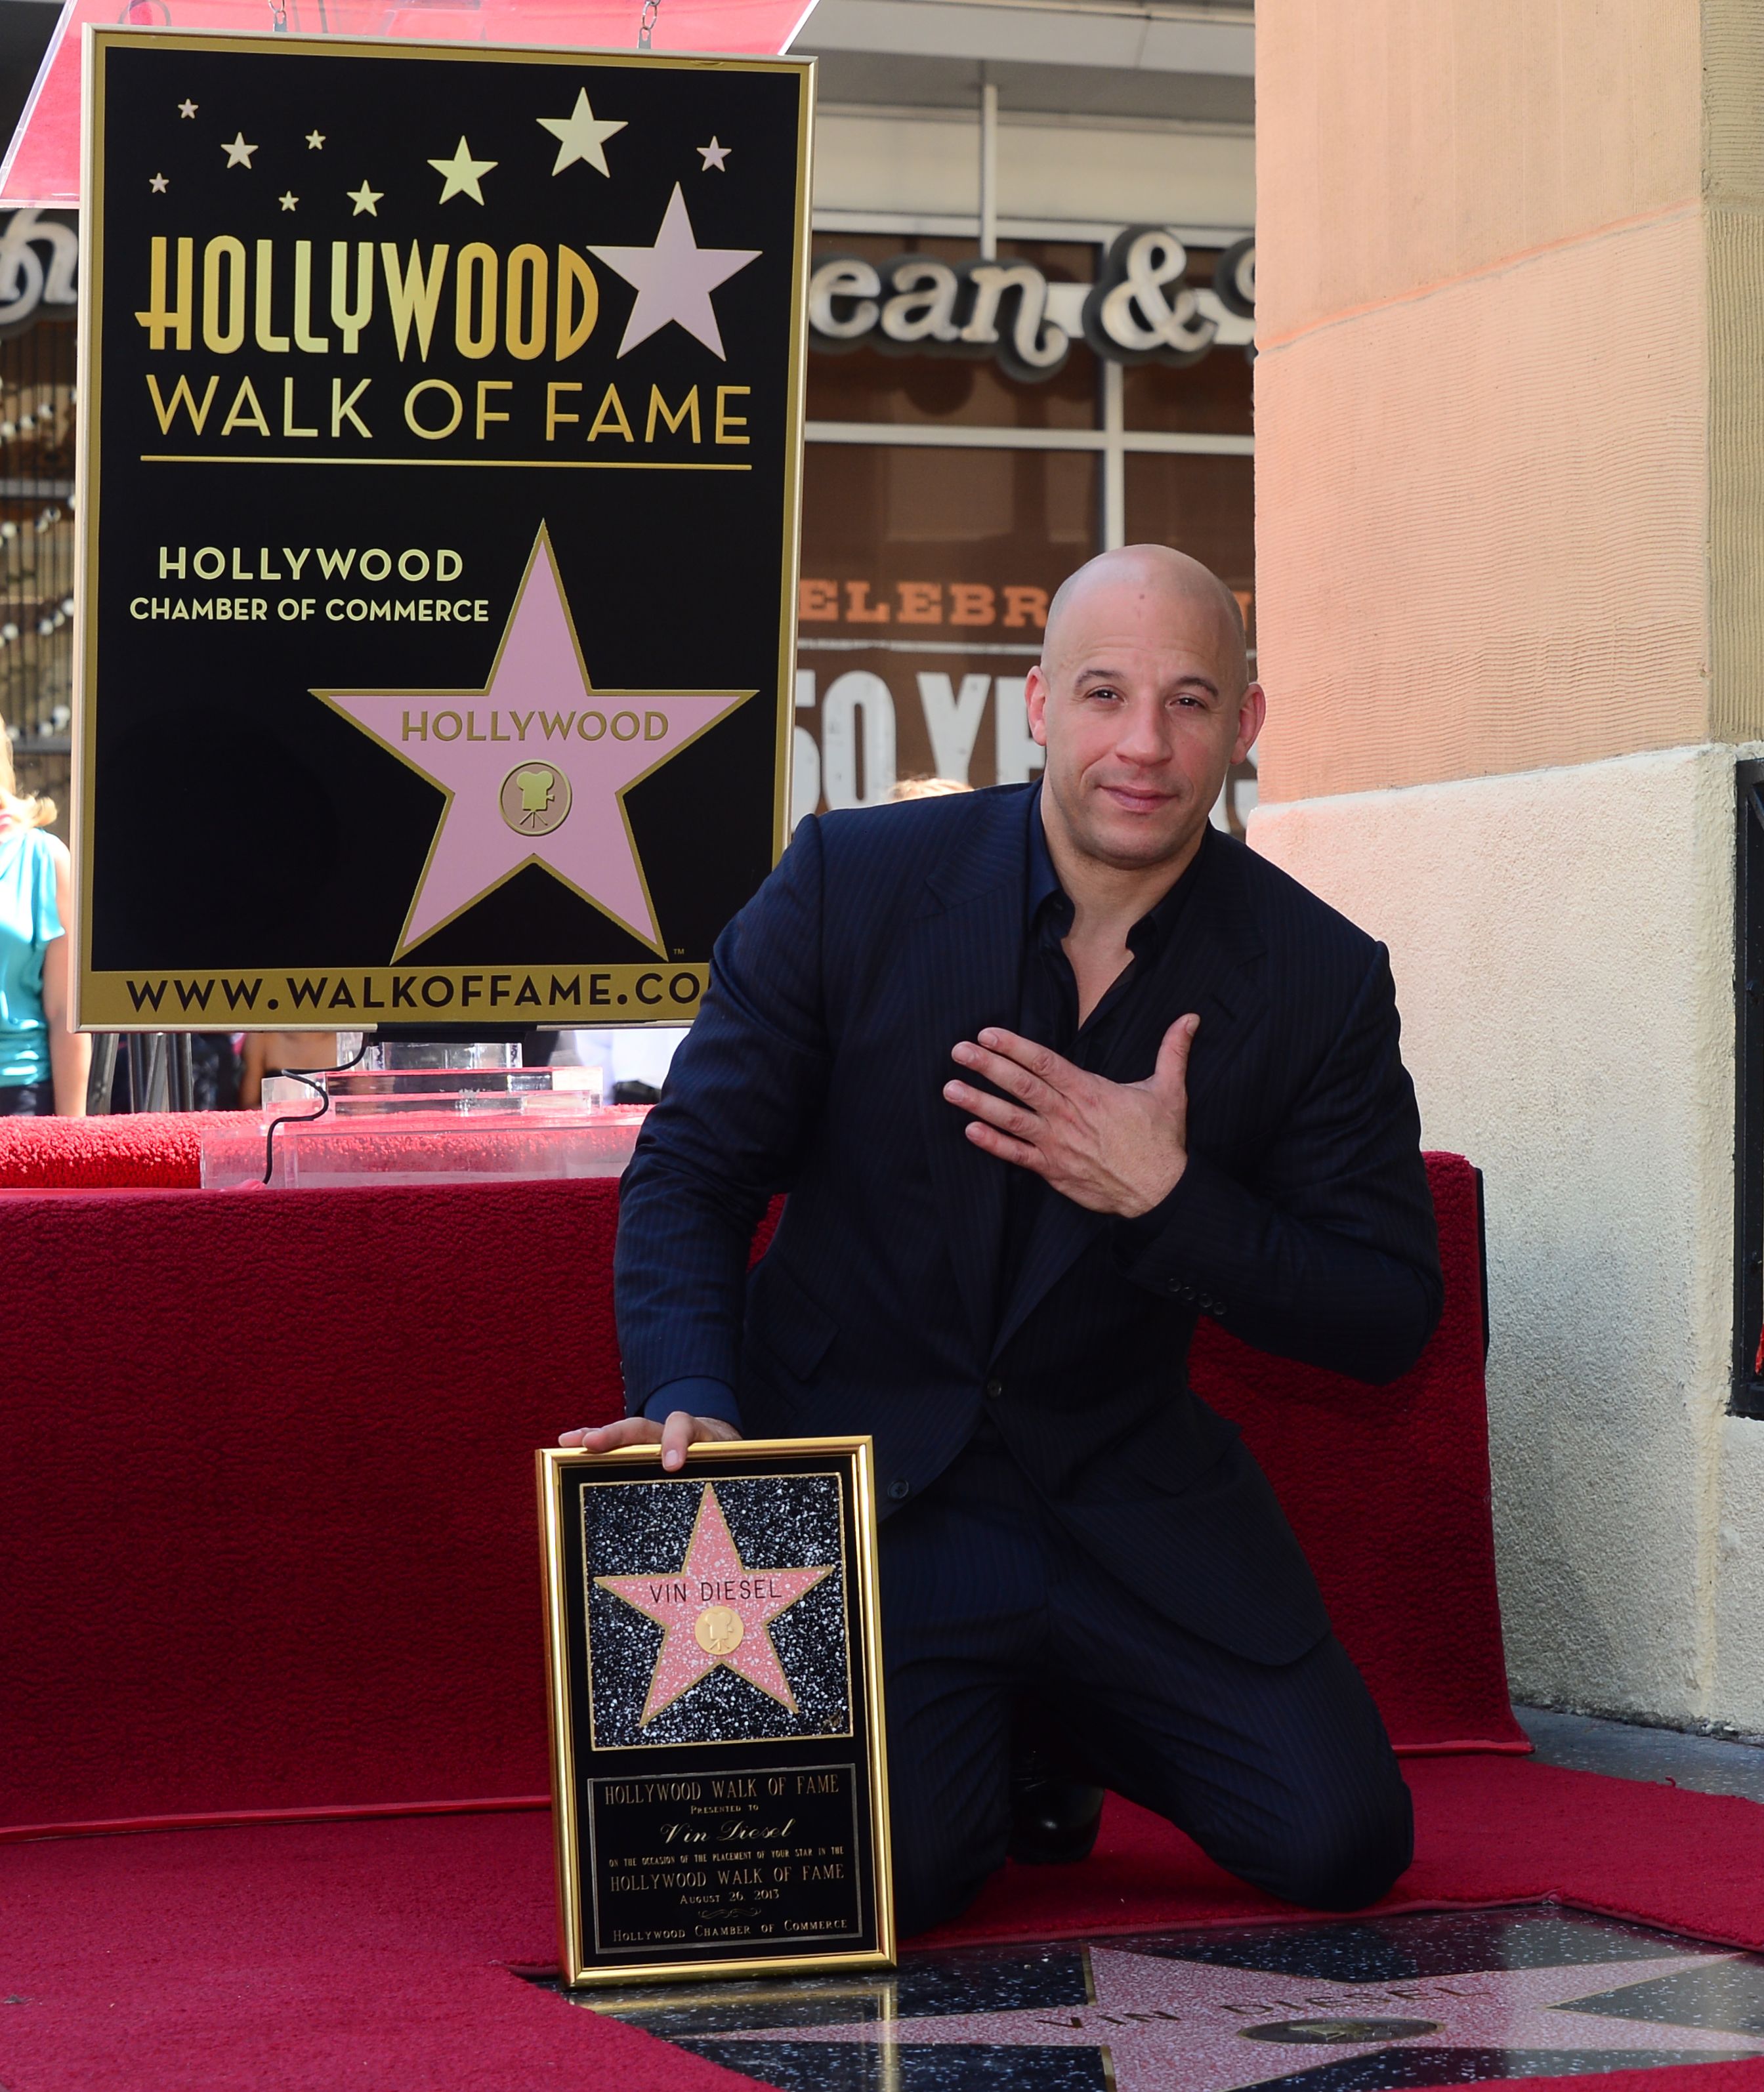 Vin Diesel +Autogramm++Hollywood Superstar++4